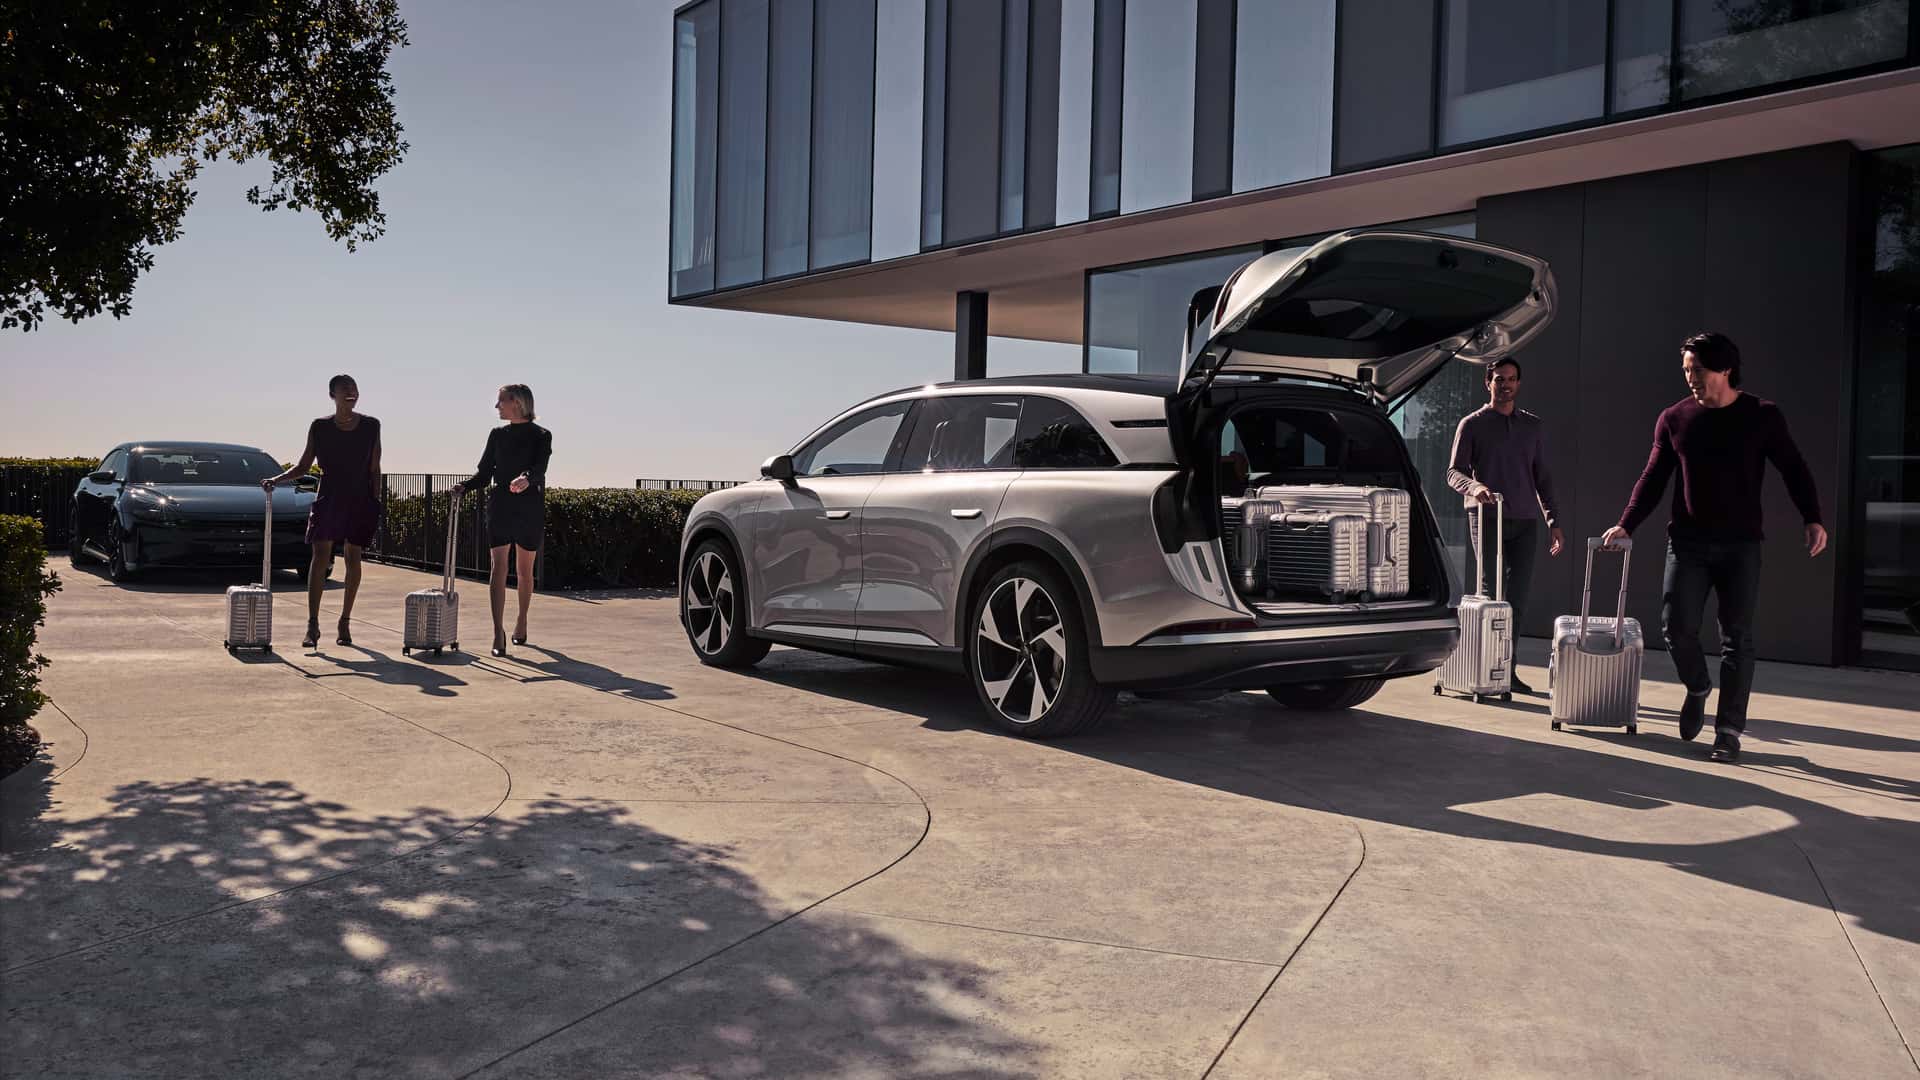 لوسيد جرافيتي SUV الكهربائية الفاخرة تنطلق رسمياً بمدى يتجاوز 700 كيلومتر وتسارع منافس للسيارات الخارقة 3